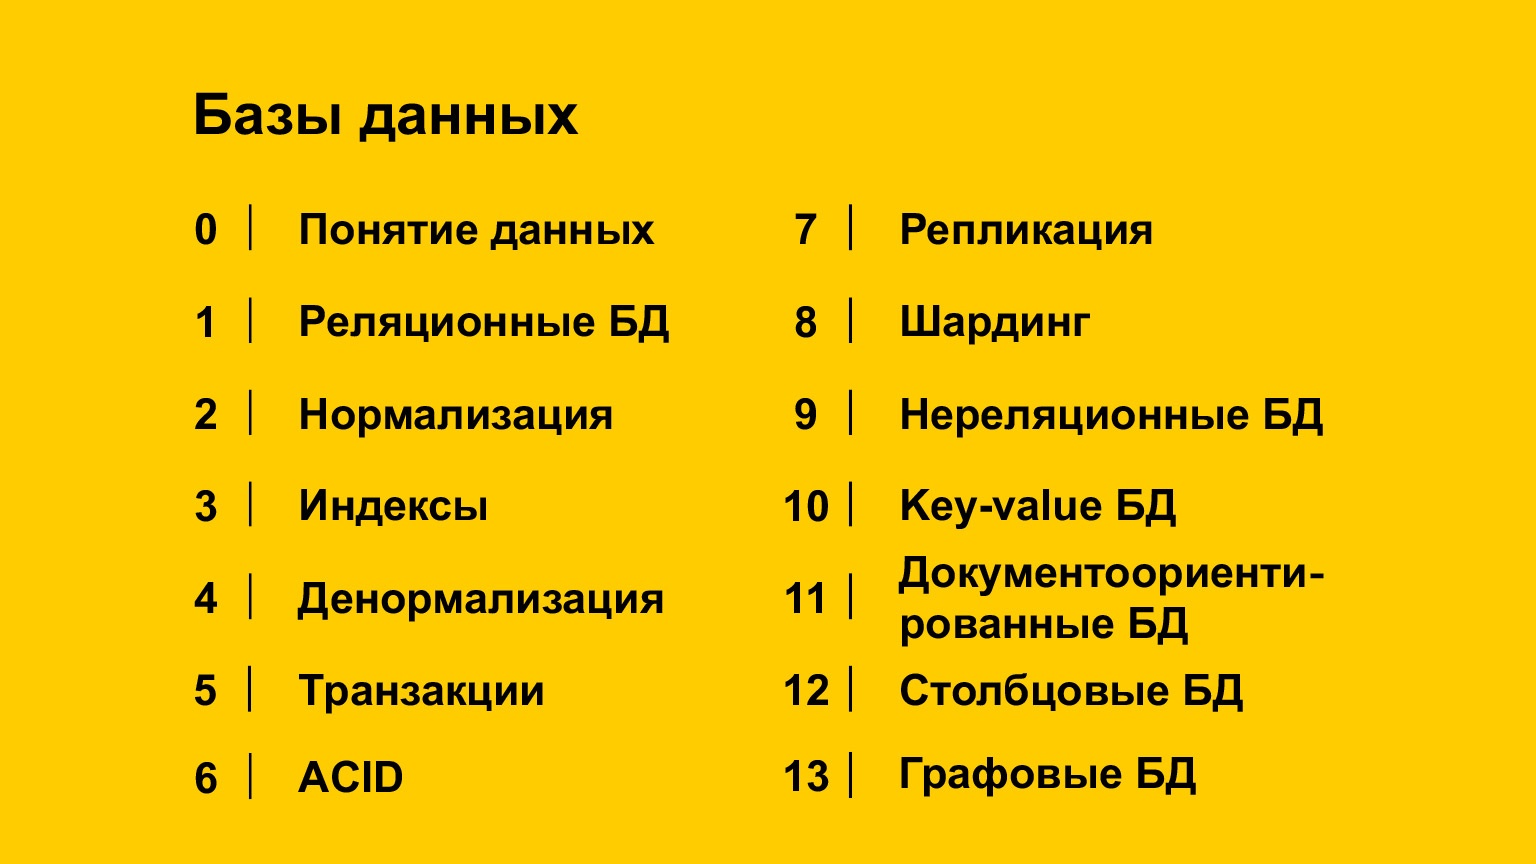 Базы данных: большой обзор типов и подходов. Доклад Яндекса - 1